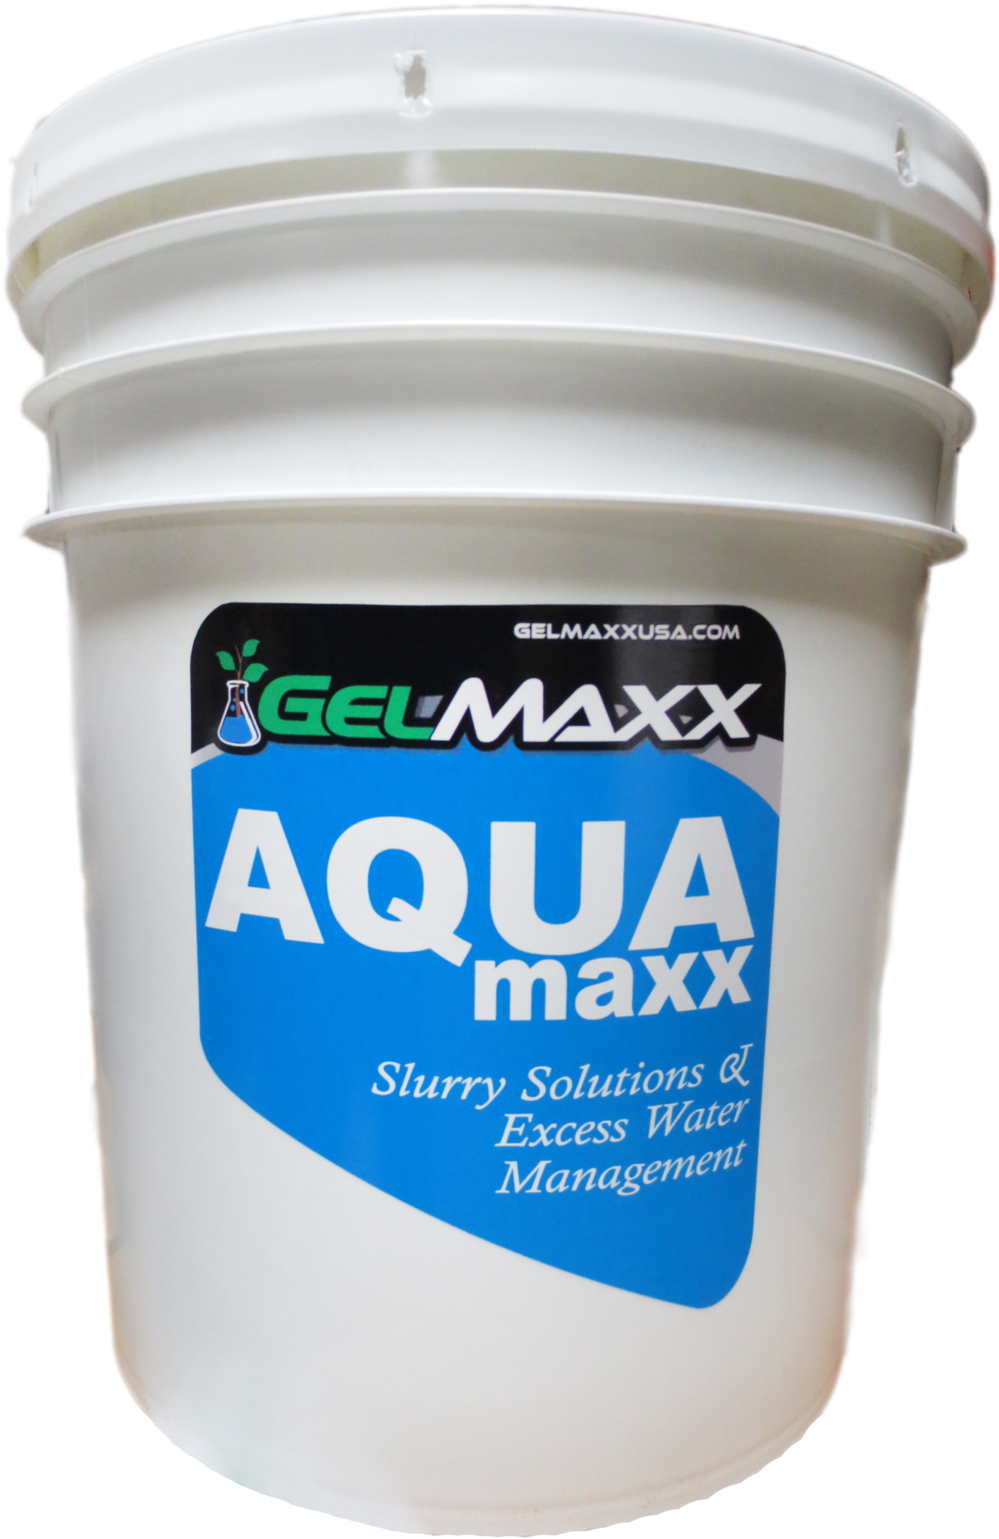 Gelmaxx Aqua Maxx Container